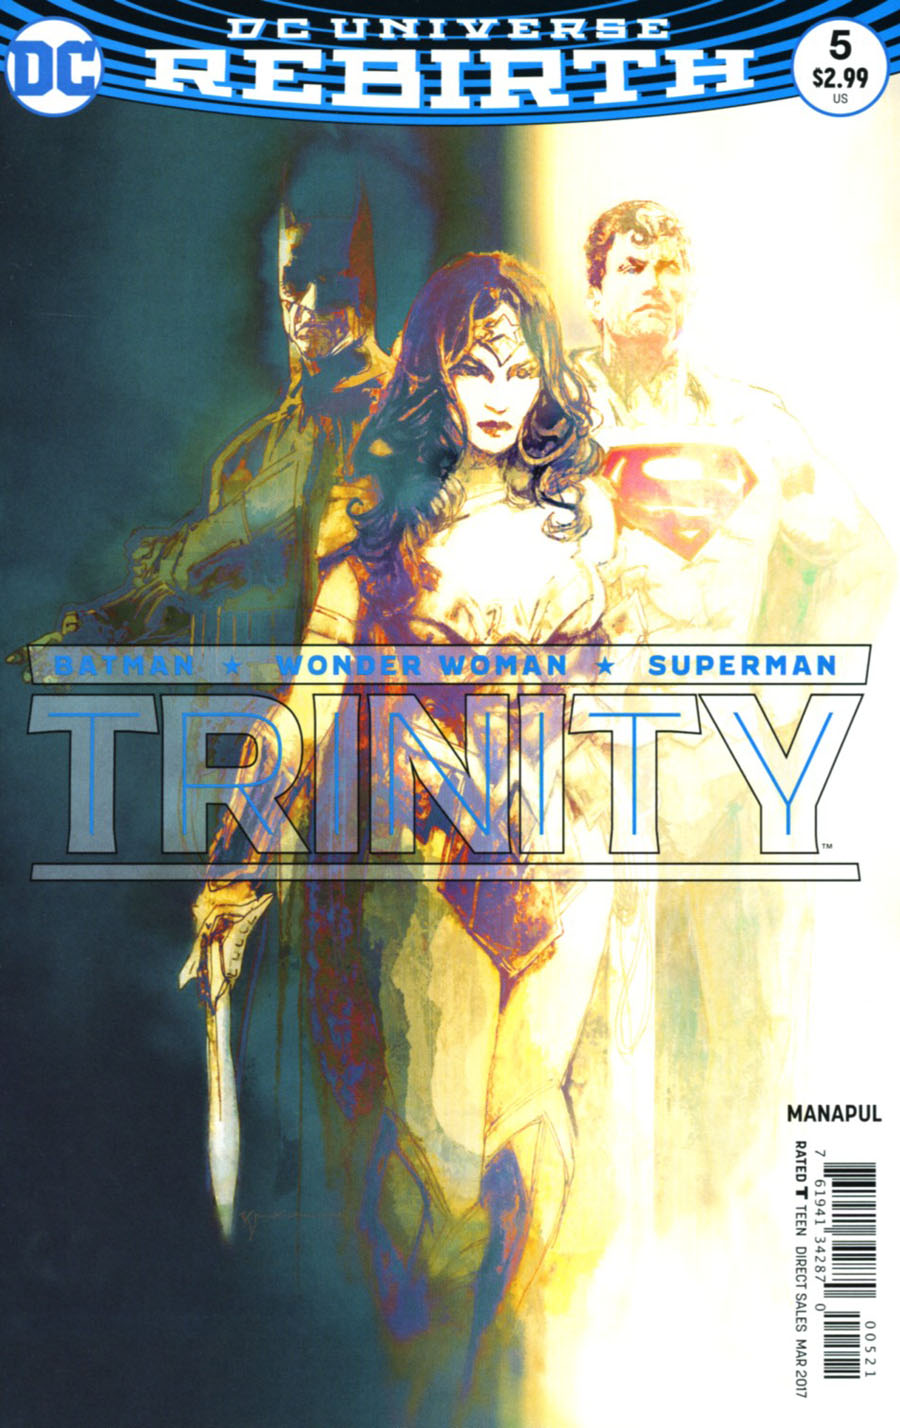 Trinity #5